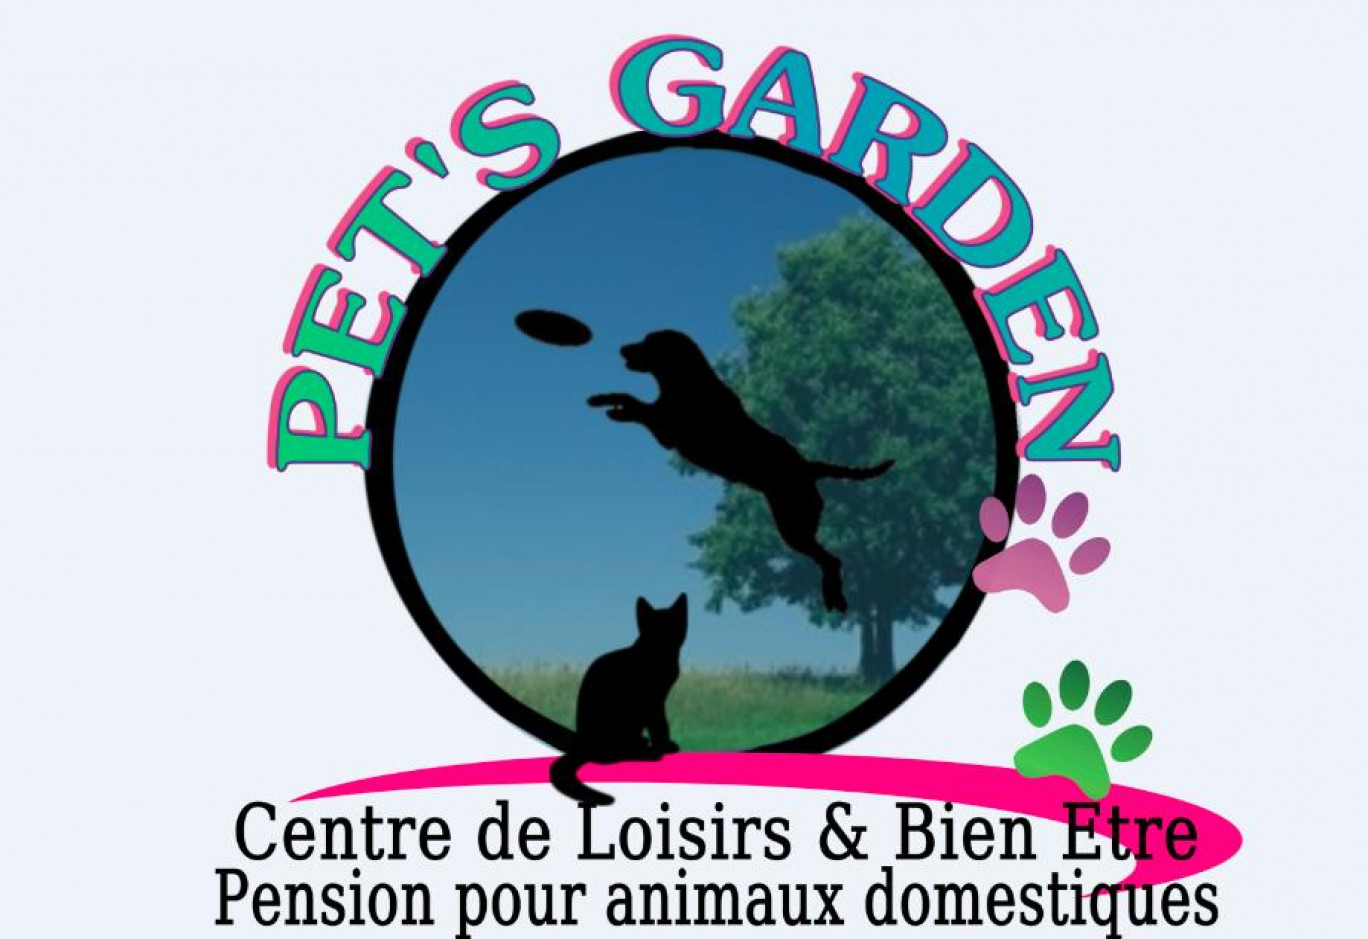 Pet’s Garden propose des séances d’amincissement pour chiens et chats.